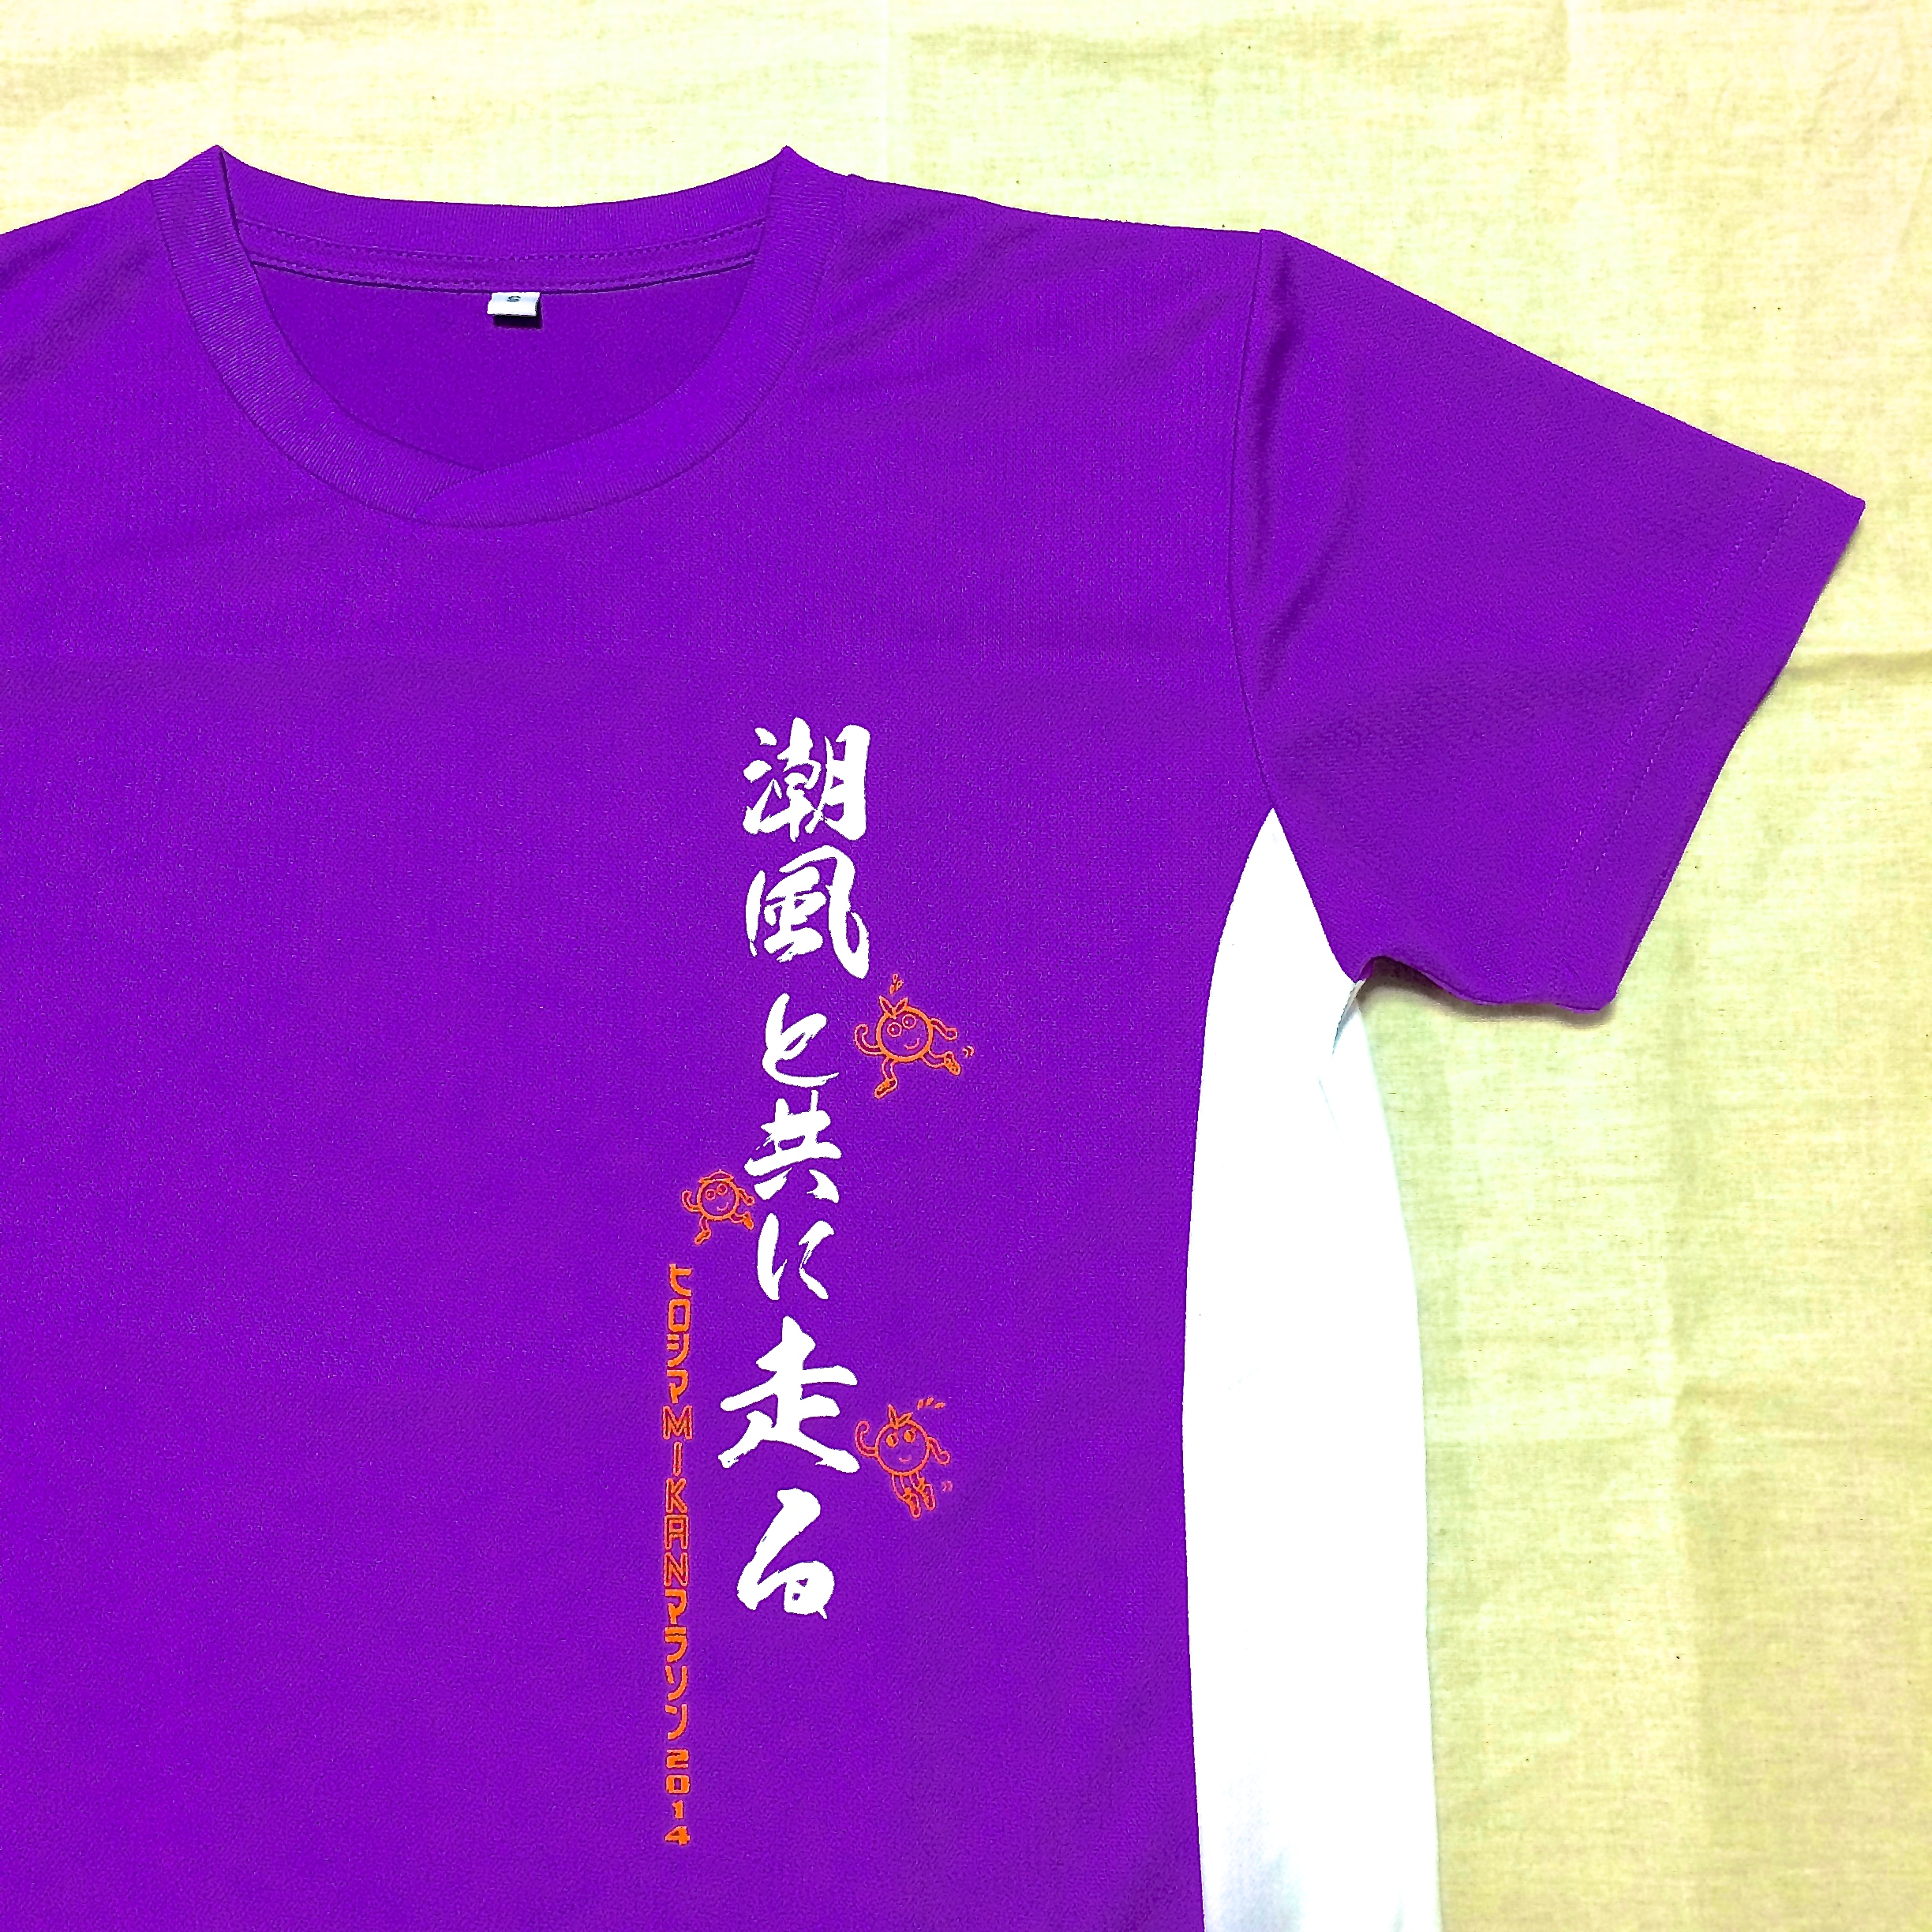 ヒロシマMIKANマラソン2014Tシャツ